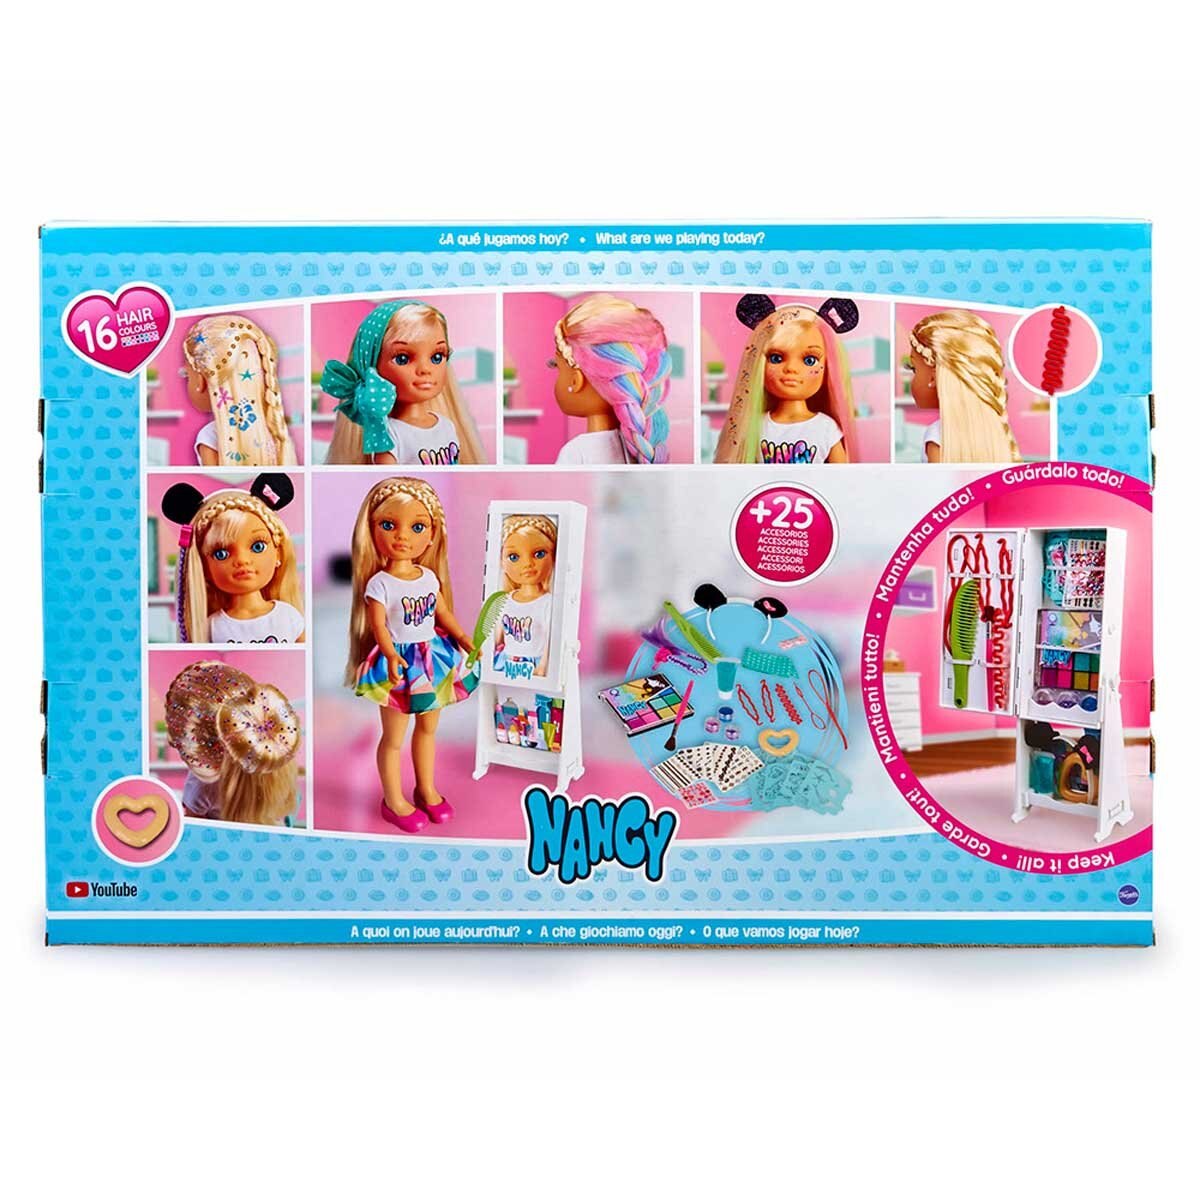 Muñeca Barbie de pelo completo 25  aniversario edición coleccionable  DWF49  AliExpress Juguetes y pasatiempos